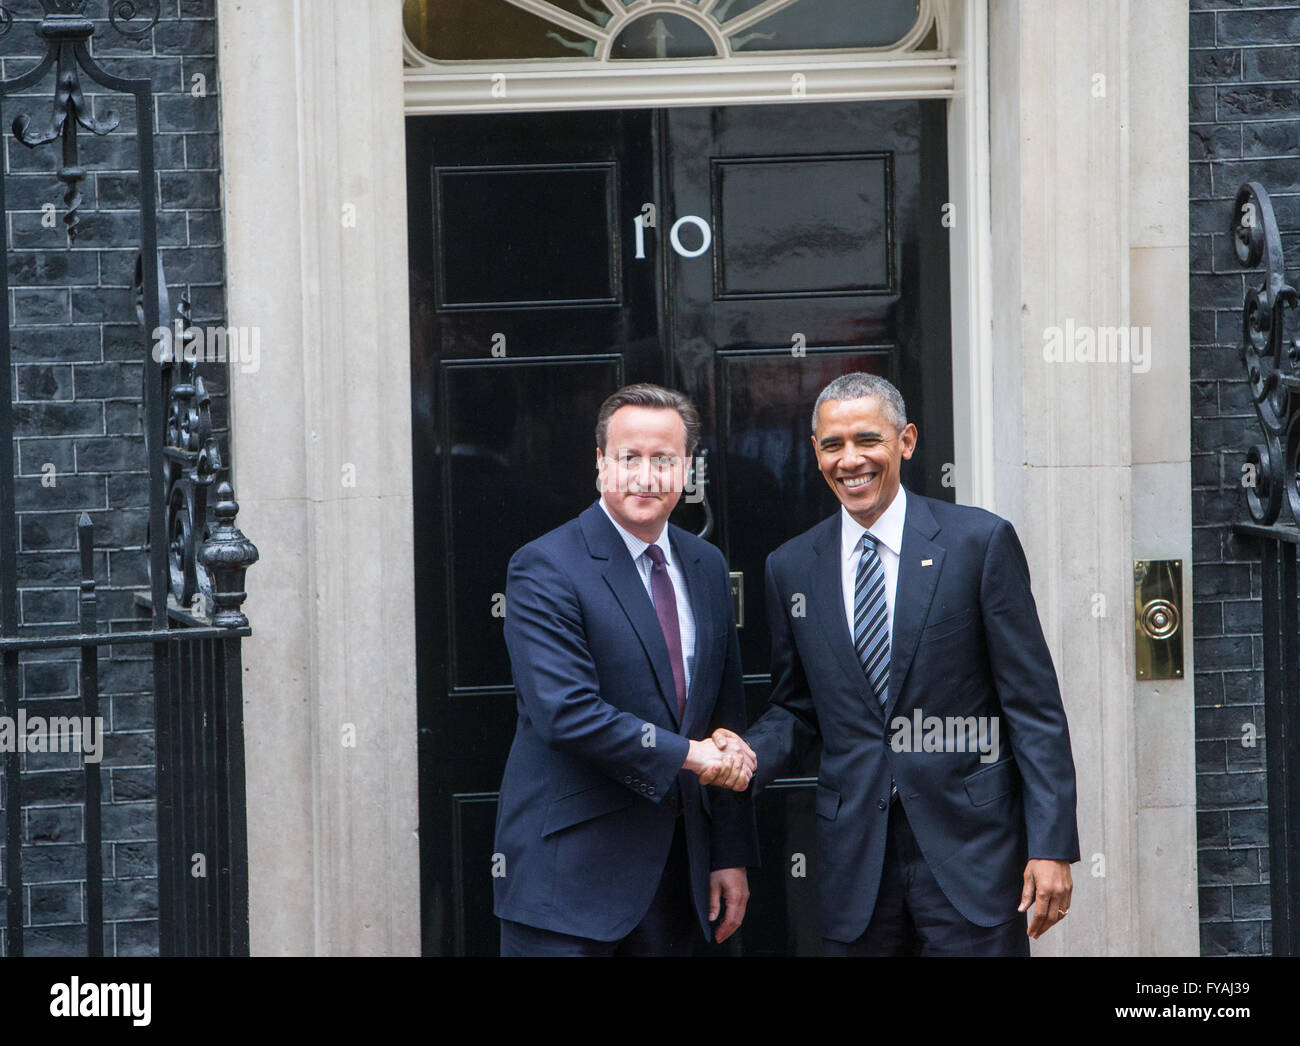 Il presidente Obama arriva al 10 di Downing Street per colloqui con il Primo Ministro David Cameron che saluta lui Foto Stock